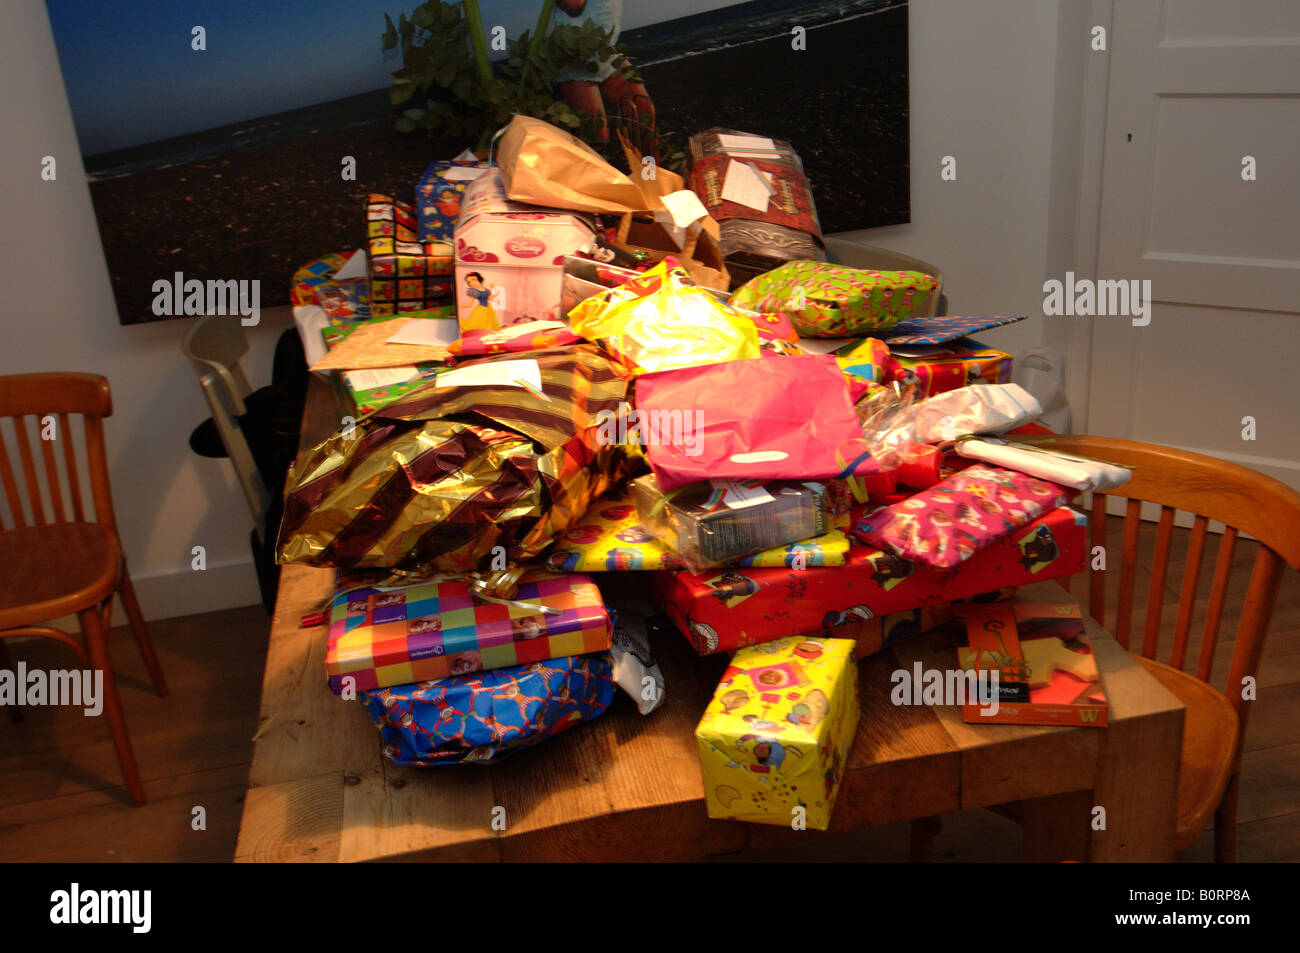 Sinterklaas Feier ein Tisch voller Geschenke Stockfotografie - Alamy